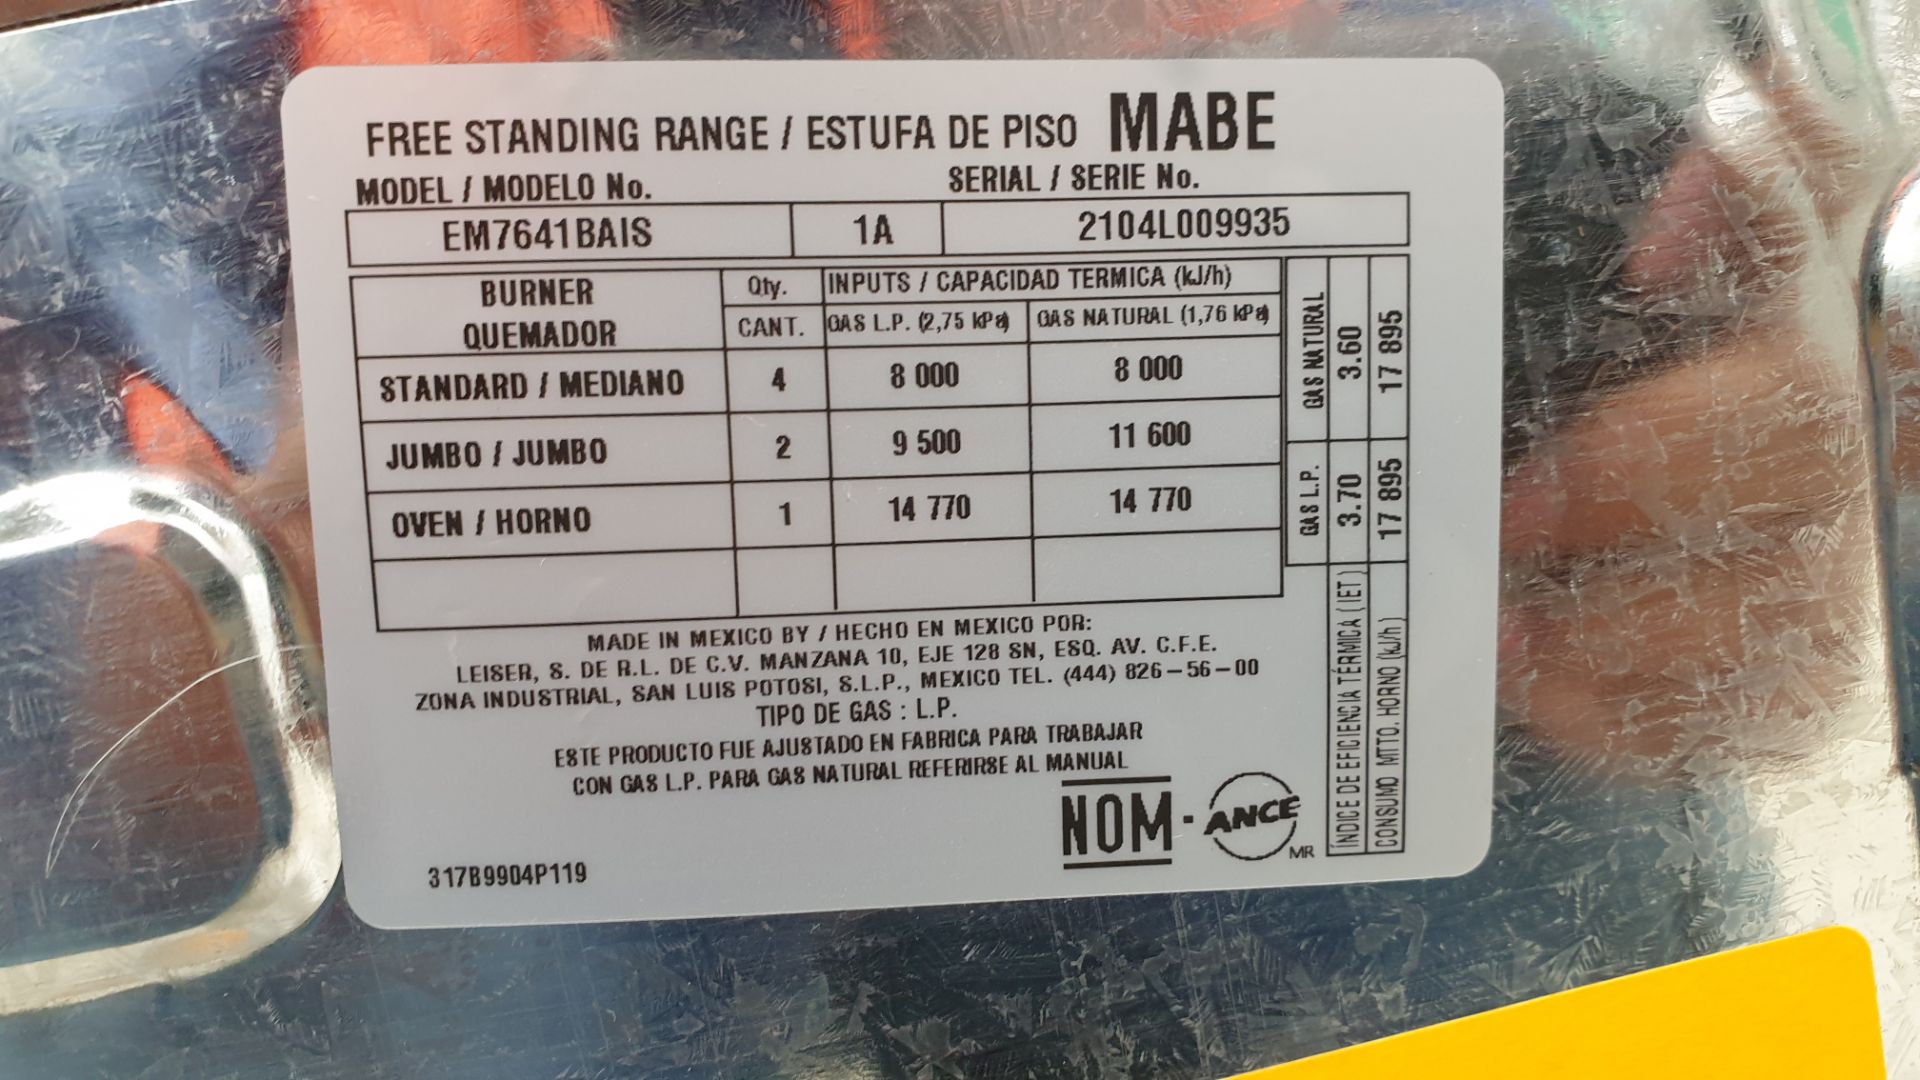 1 Estufa marca Mabe color gris de 6 quemadores modelo EM7641BAIS1A - Image 18 of 19